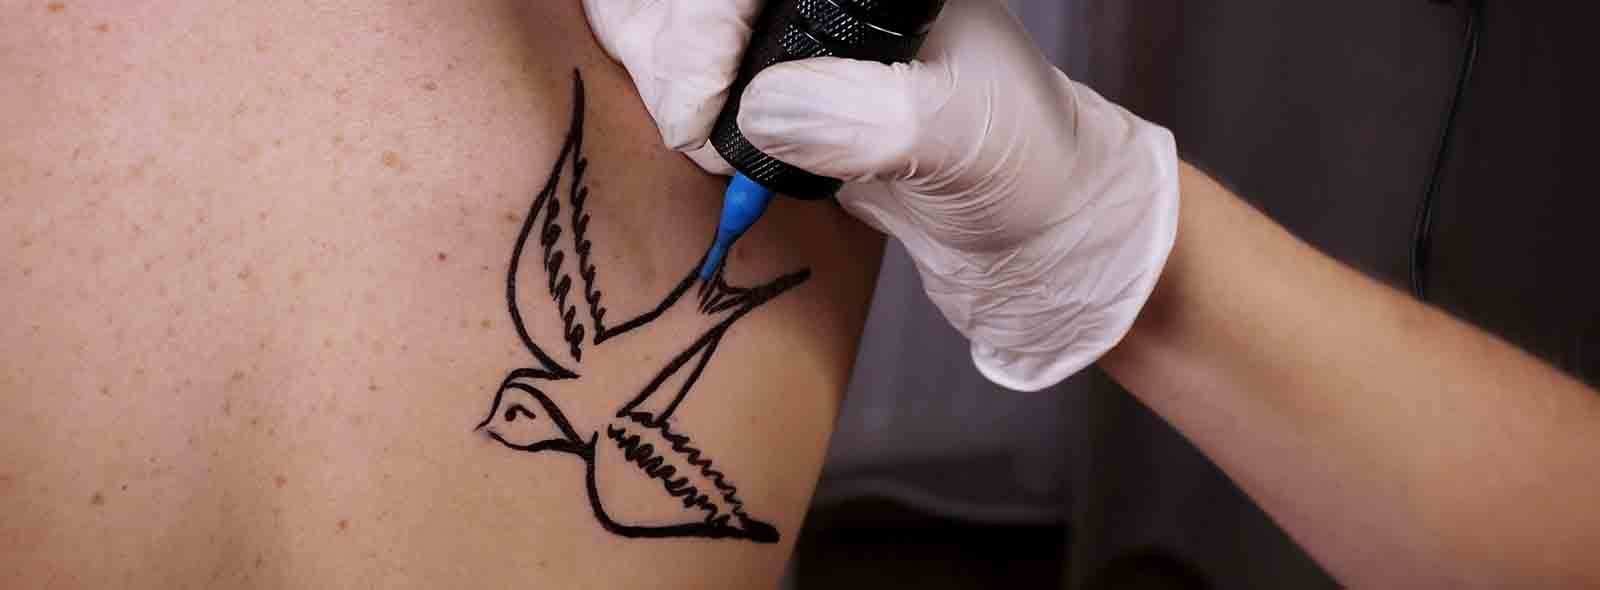 Qual è il significato della rondine nel tatuaggio?